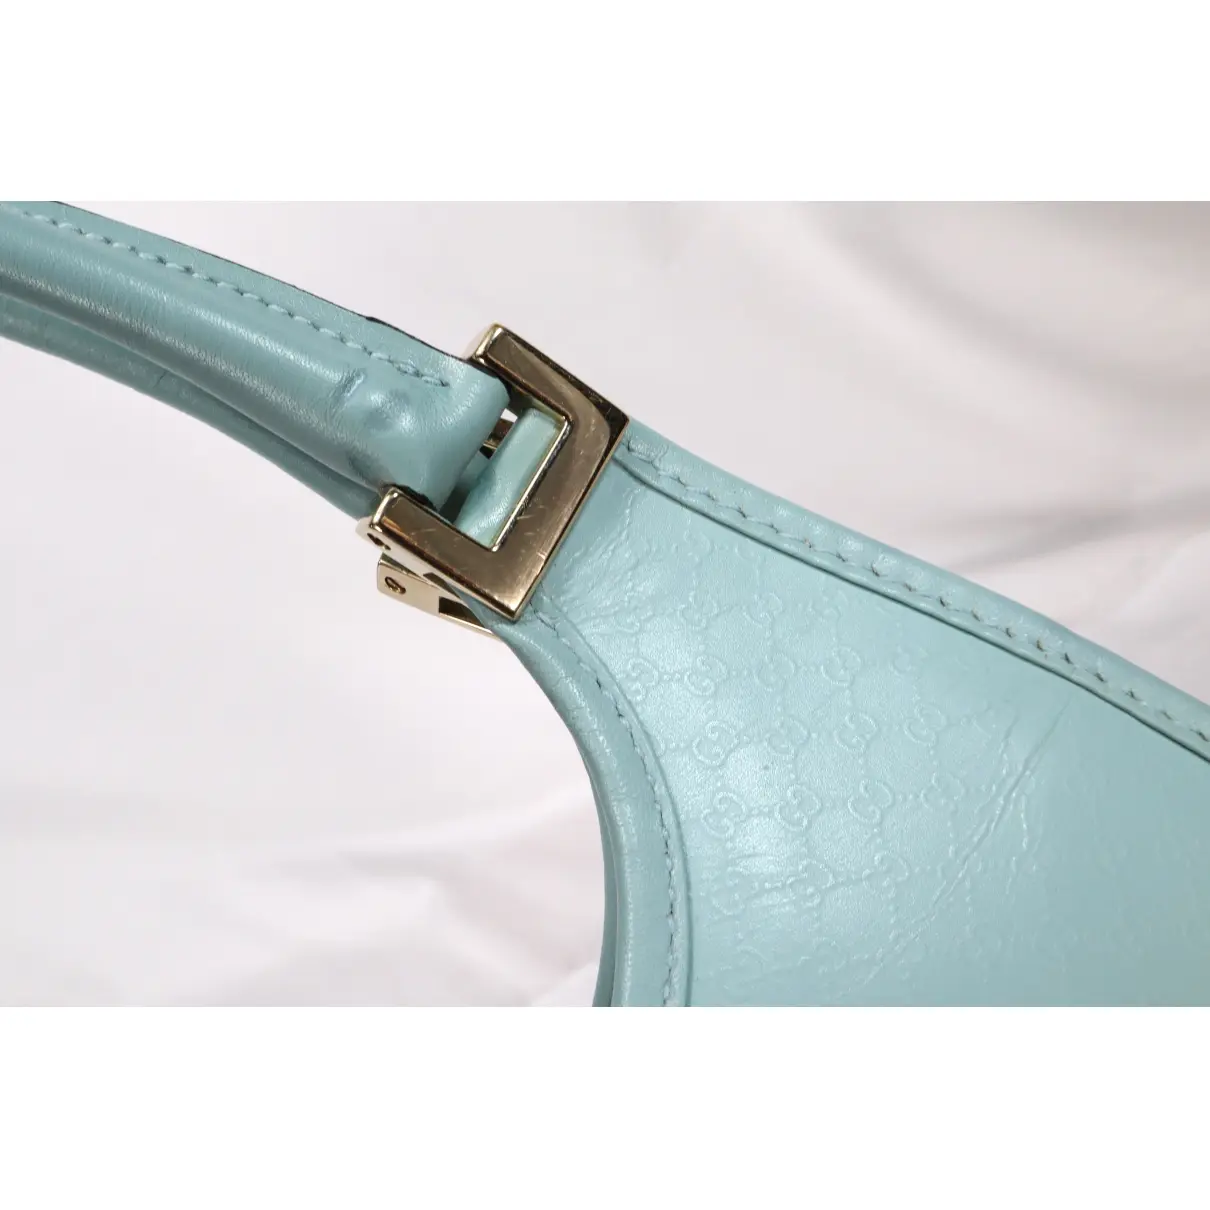 Jackie leather handbag Gucci - Vintage